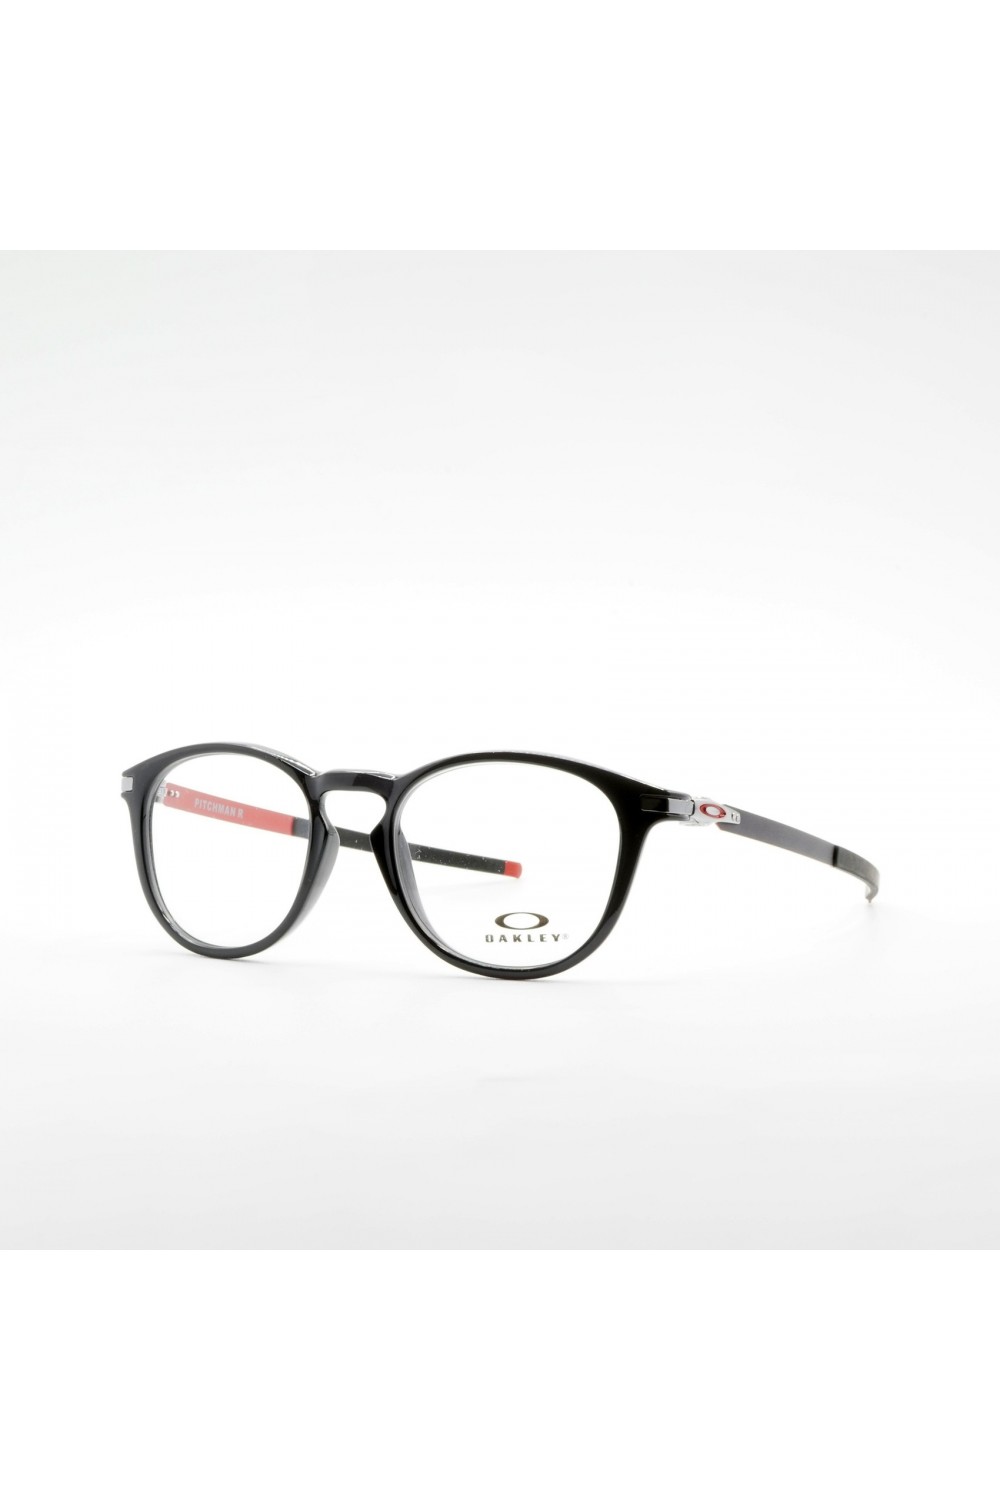 Oakley - Occhiali da vista in celluloide tondi per uomo nero/rosso, nero/oro -